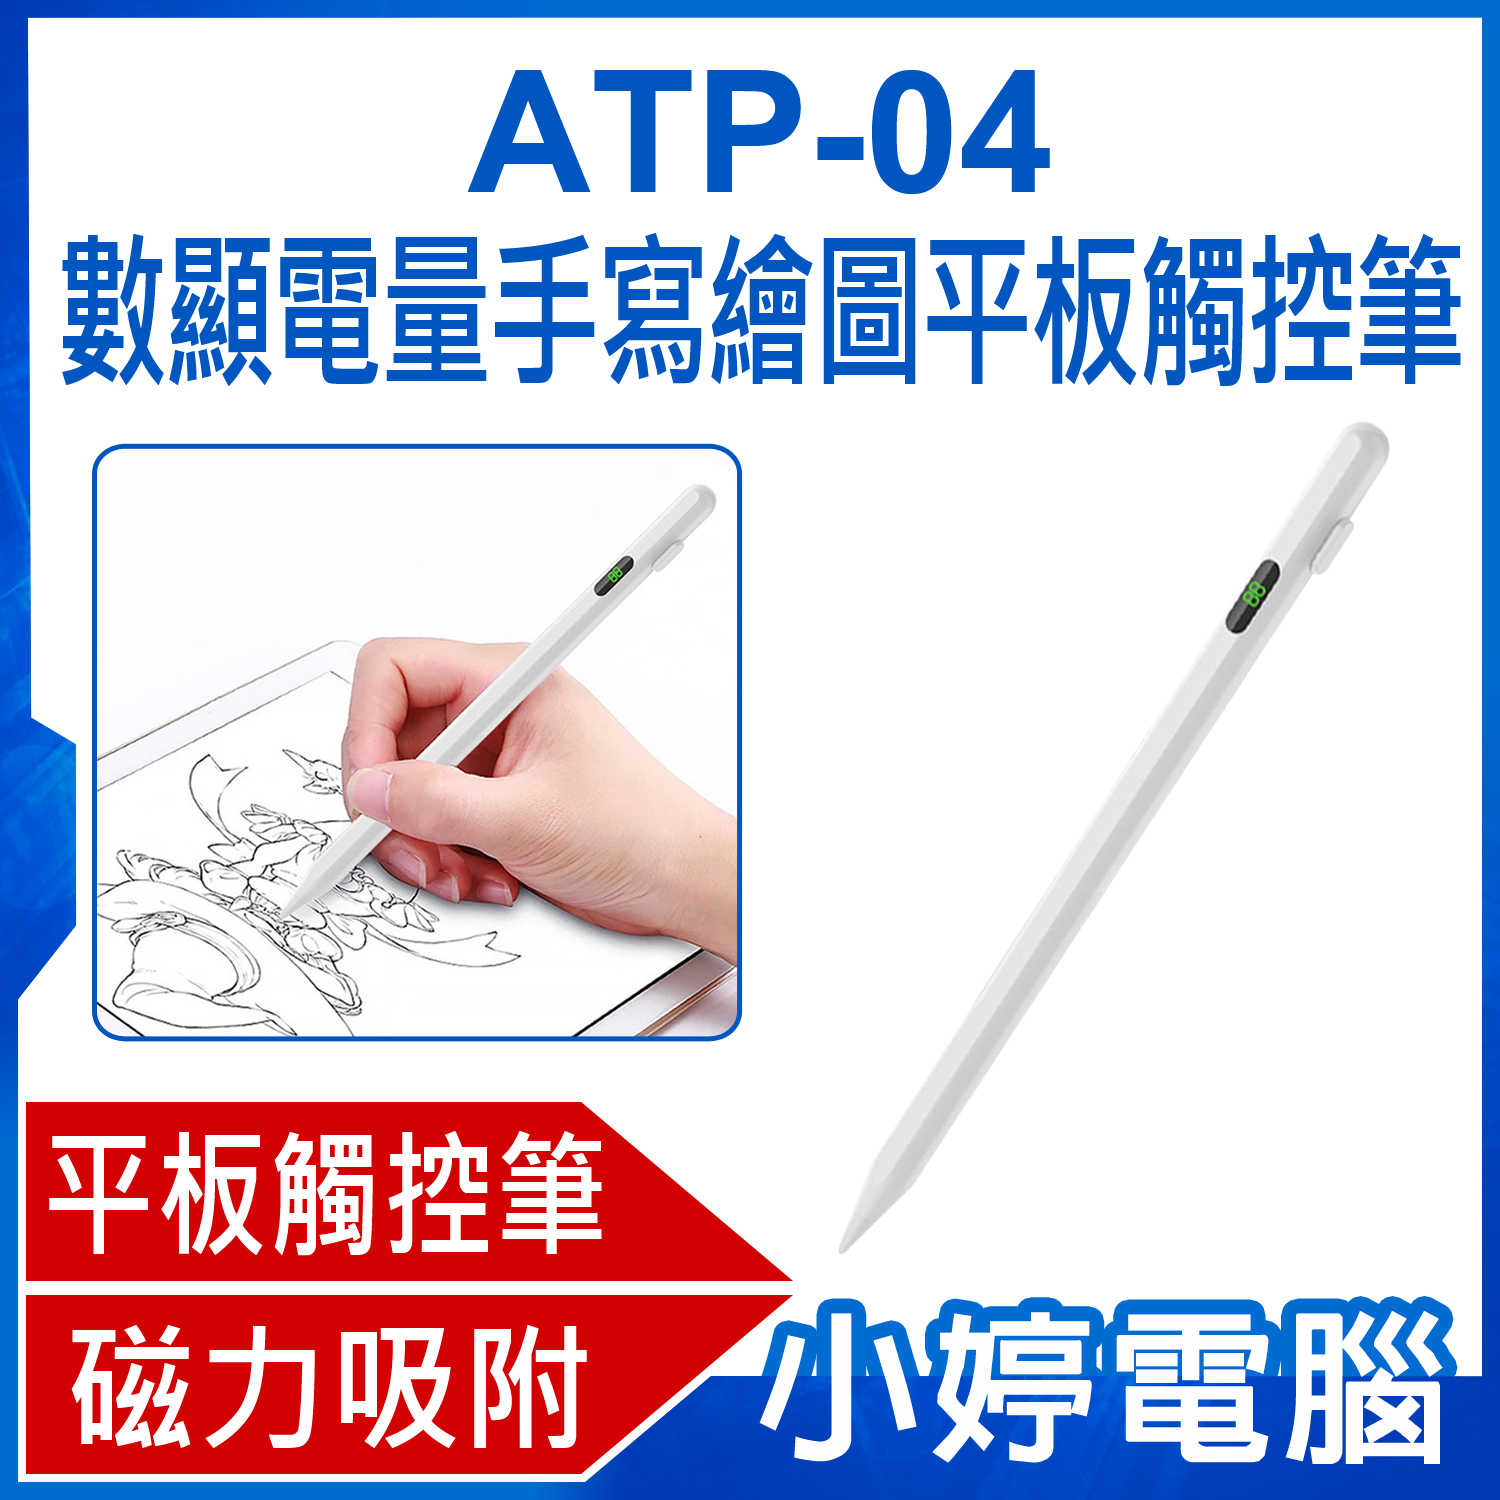 【小婷電腦】ATP-04 數顯電量手寫繪圖平板觸控筆 iPad適用 蘋果專用平板電容觸控畫筆/書寫筆/電繪筆